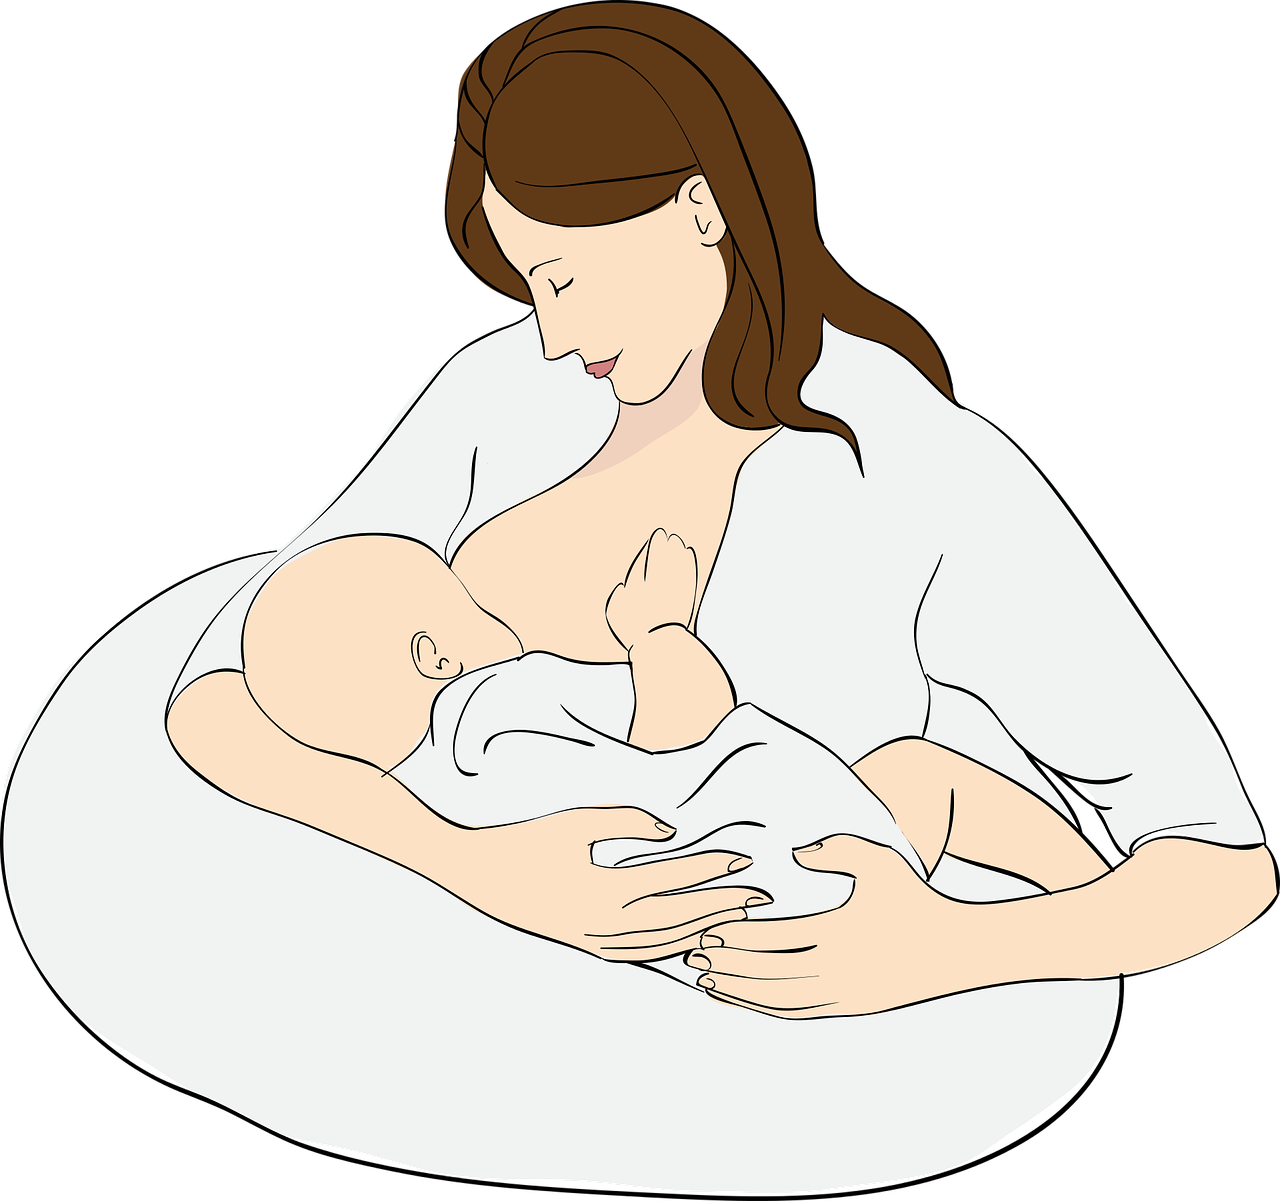 法国国立<font color="red">助产士</font>学院围产期干预指南：启动和支持母乳喂养